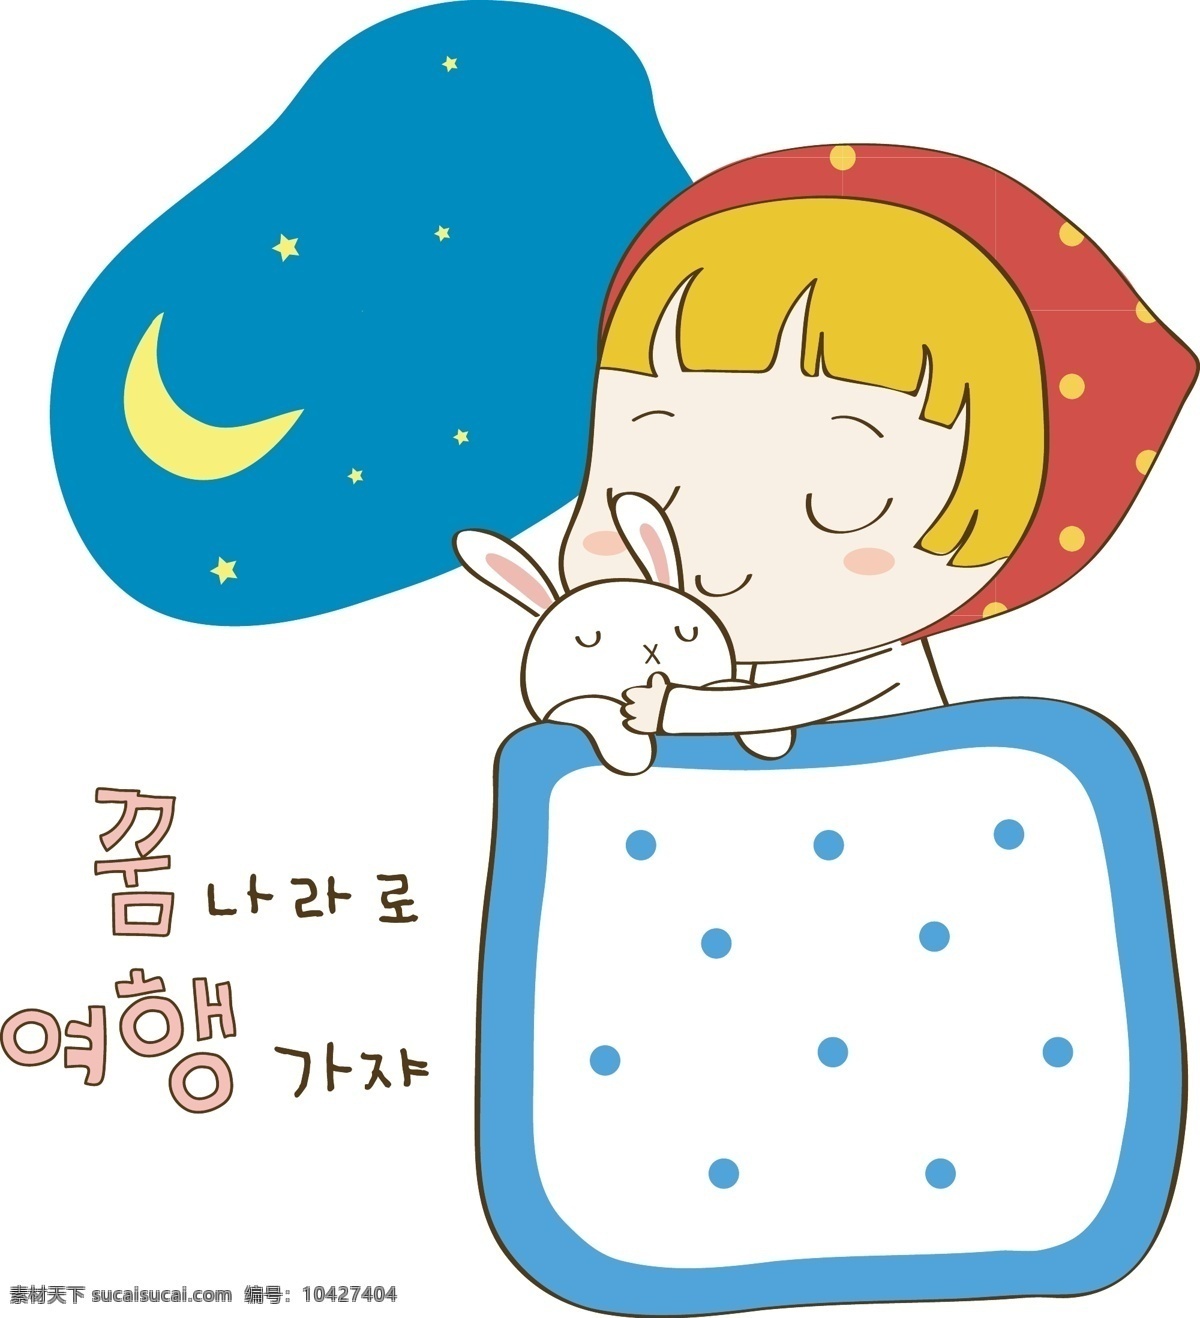 睡觉的女孩 睡觉 夜晚 可爱 儿童 兔子 漫画 卡通 韩国卡通 韩文 儿童幼儿 矢量人物 矢量素材 白色